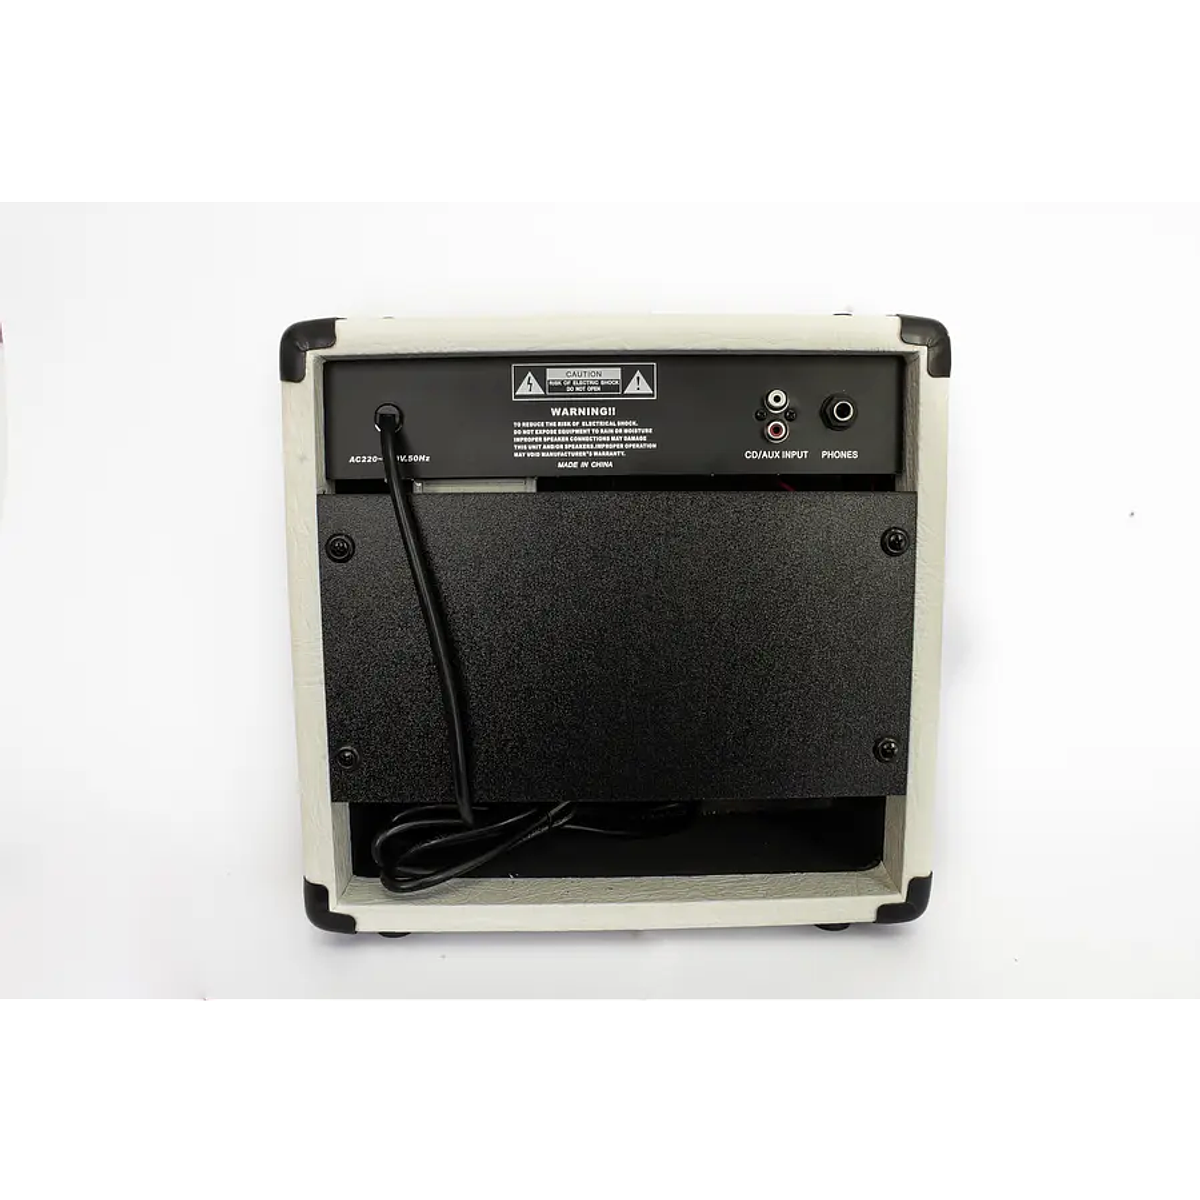 Amplificador XGTR de guitarra eléctrica 30W GX-30